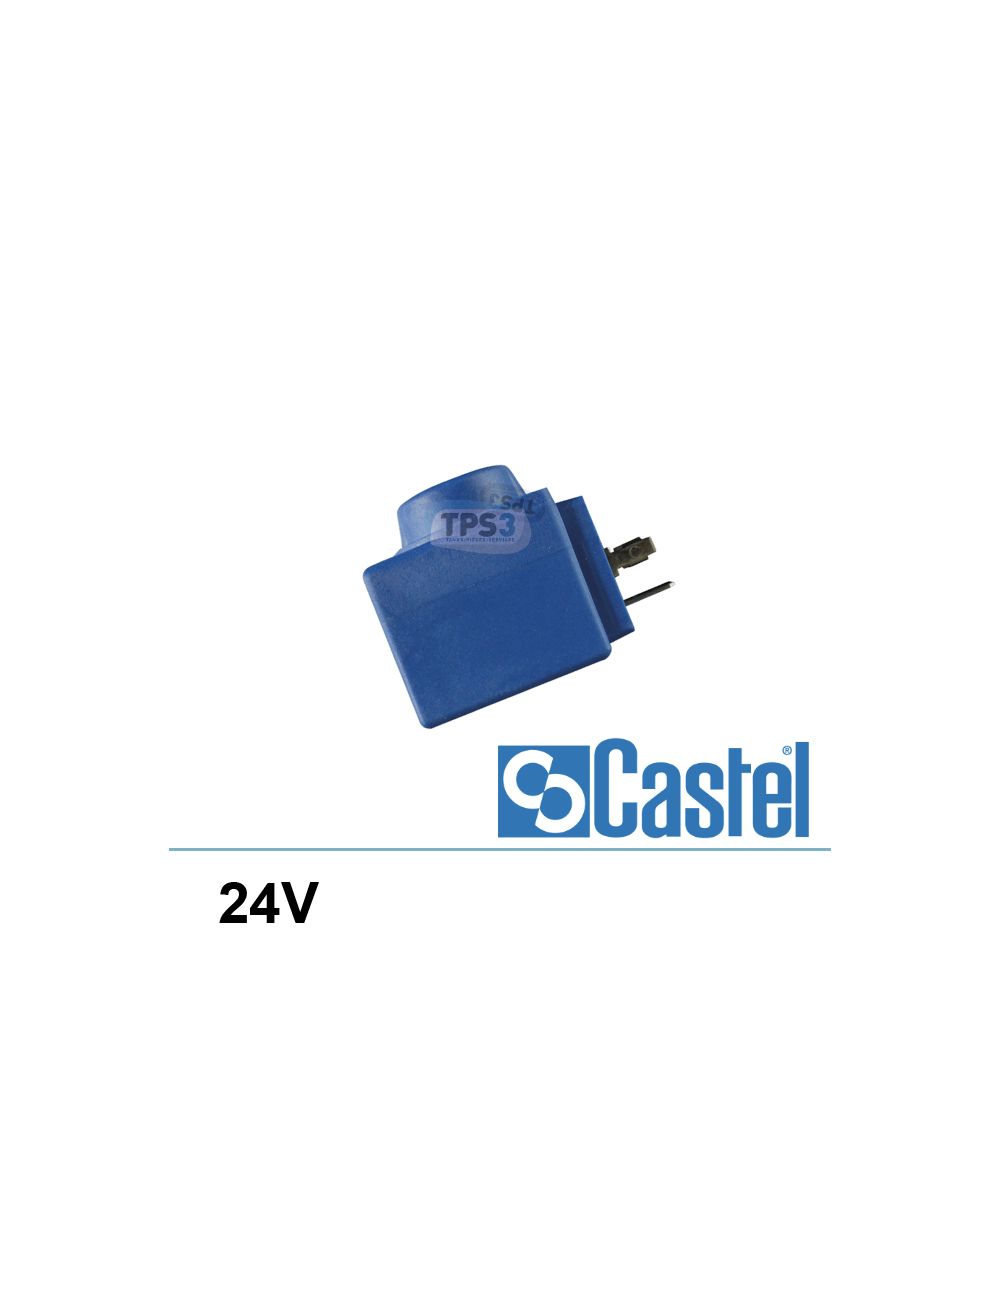 Bobine pour électrovanne fréon Castel HF2 24V